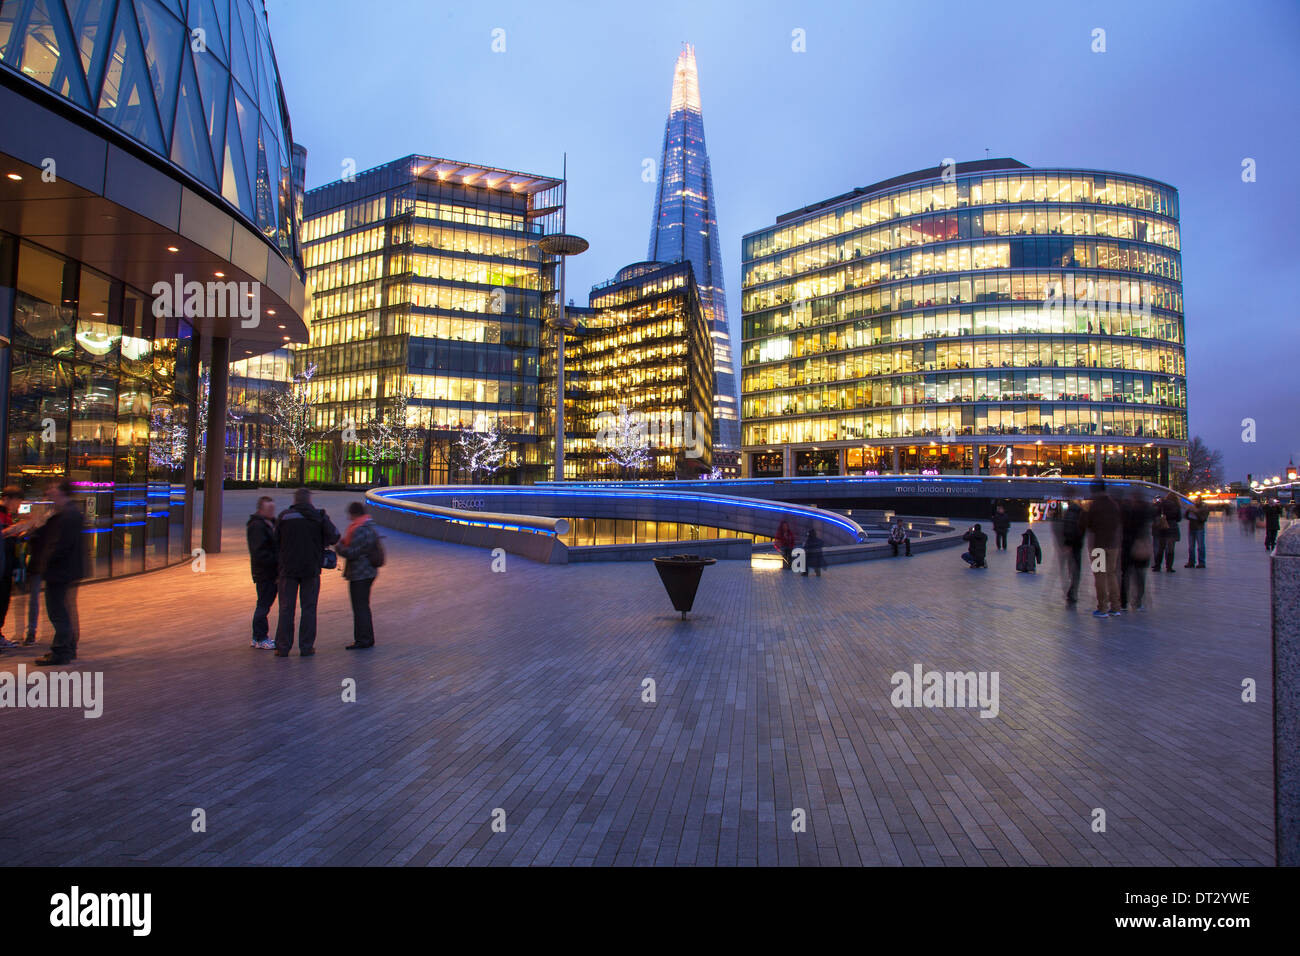 Le Shard Immeuble de bureaux modernes, City of London, UK Banque D'Images